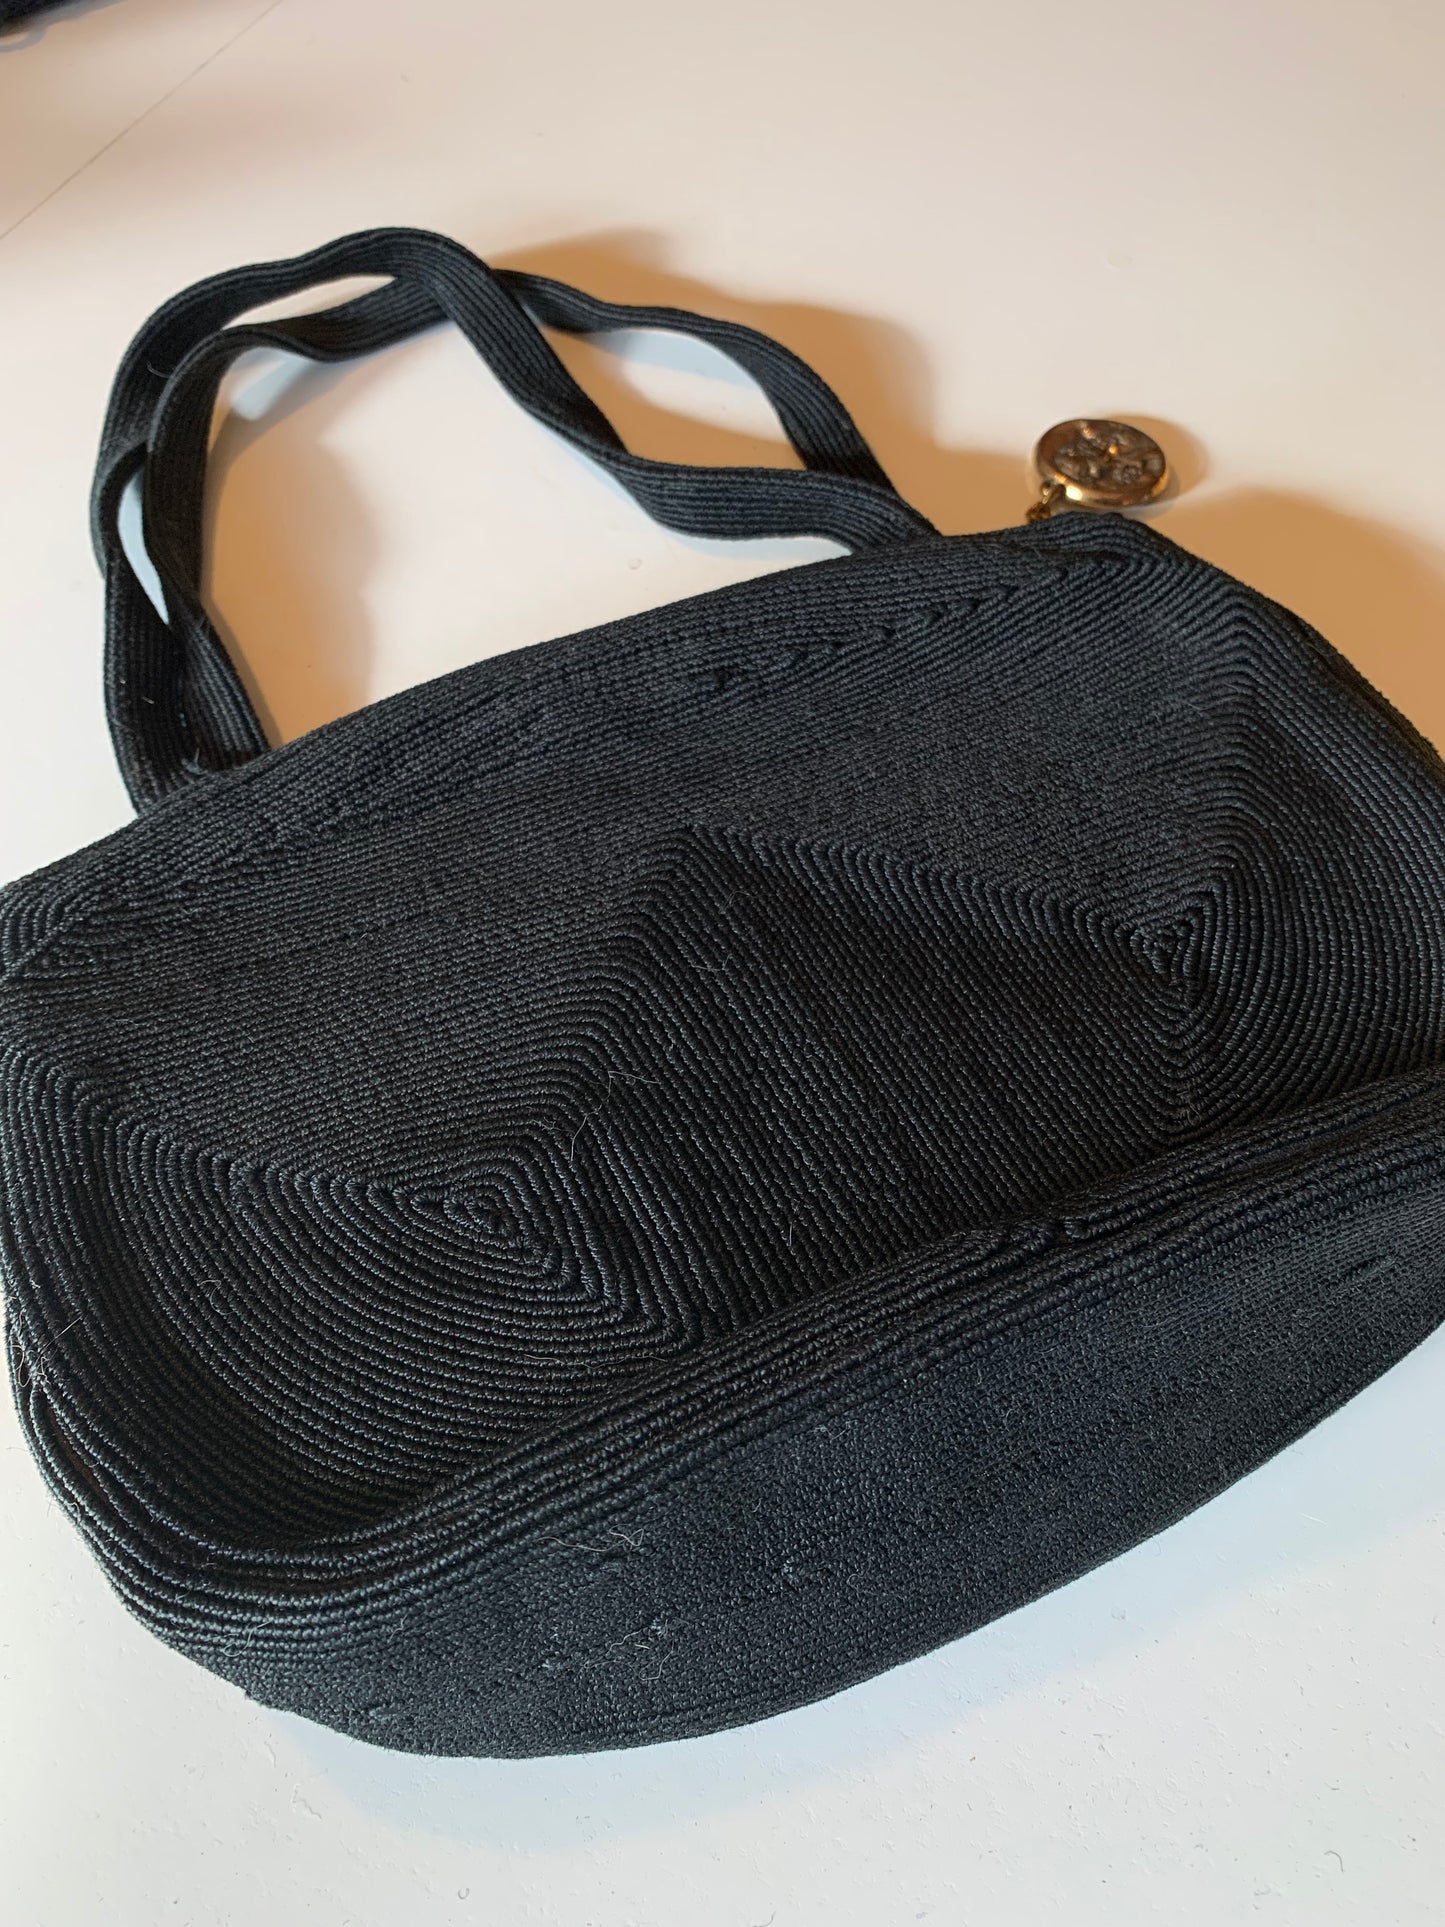 Black Double Handle Cordé Style Handbag with Nouveau Zipper Pull circa 1940s